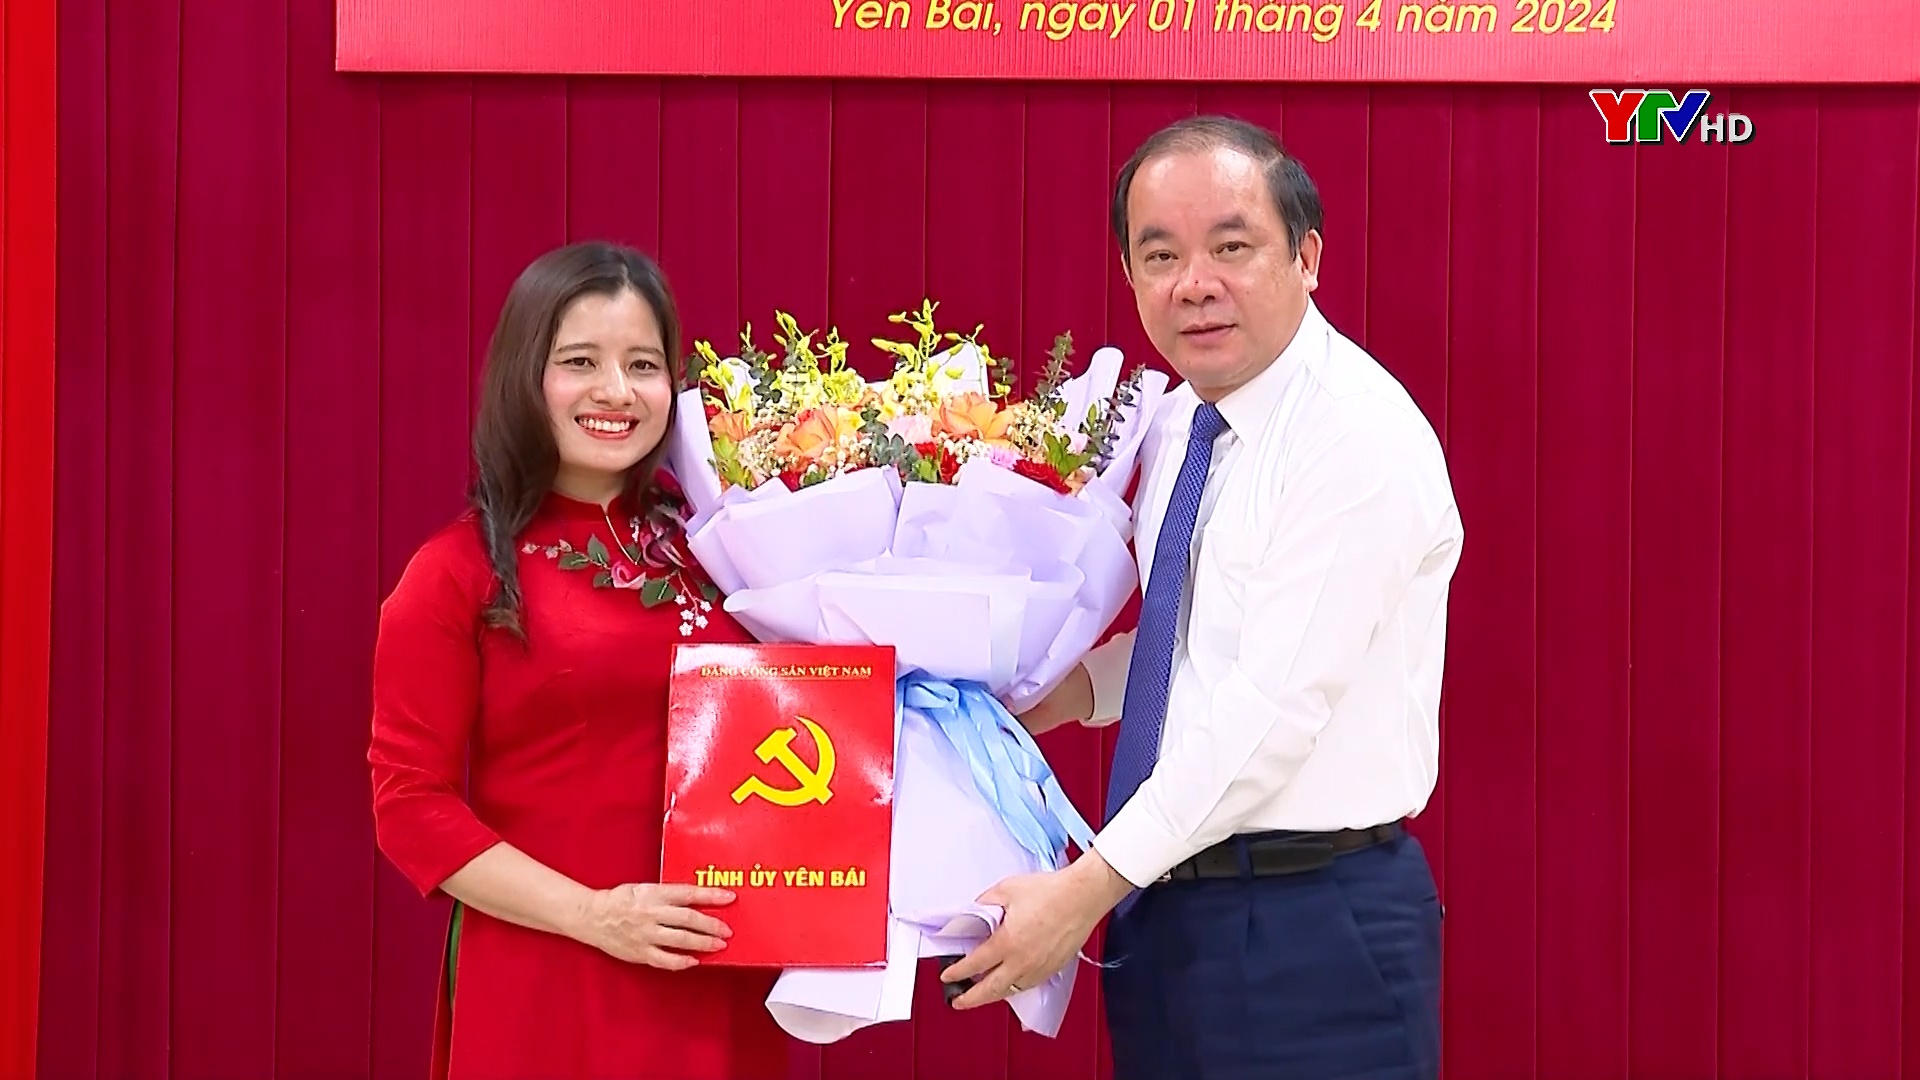 Đồng chí Nguyễn Thị Thúy Mùi được bổ nhiệm giữ chức Phó Trưởng Ban Tuyên giáo Tỉnh ủy